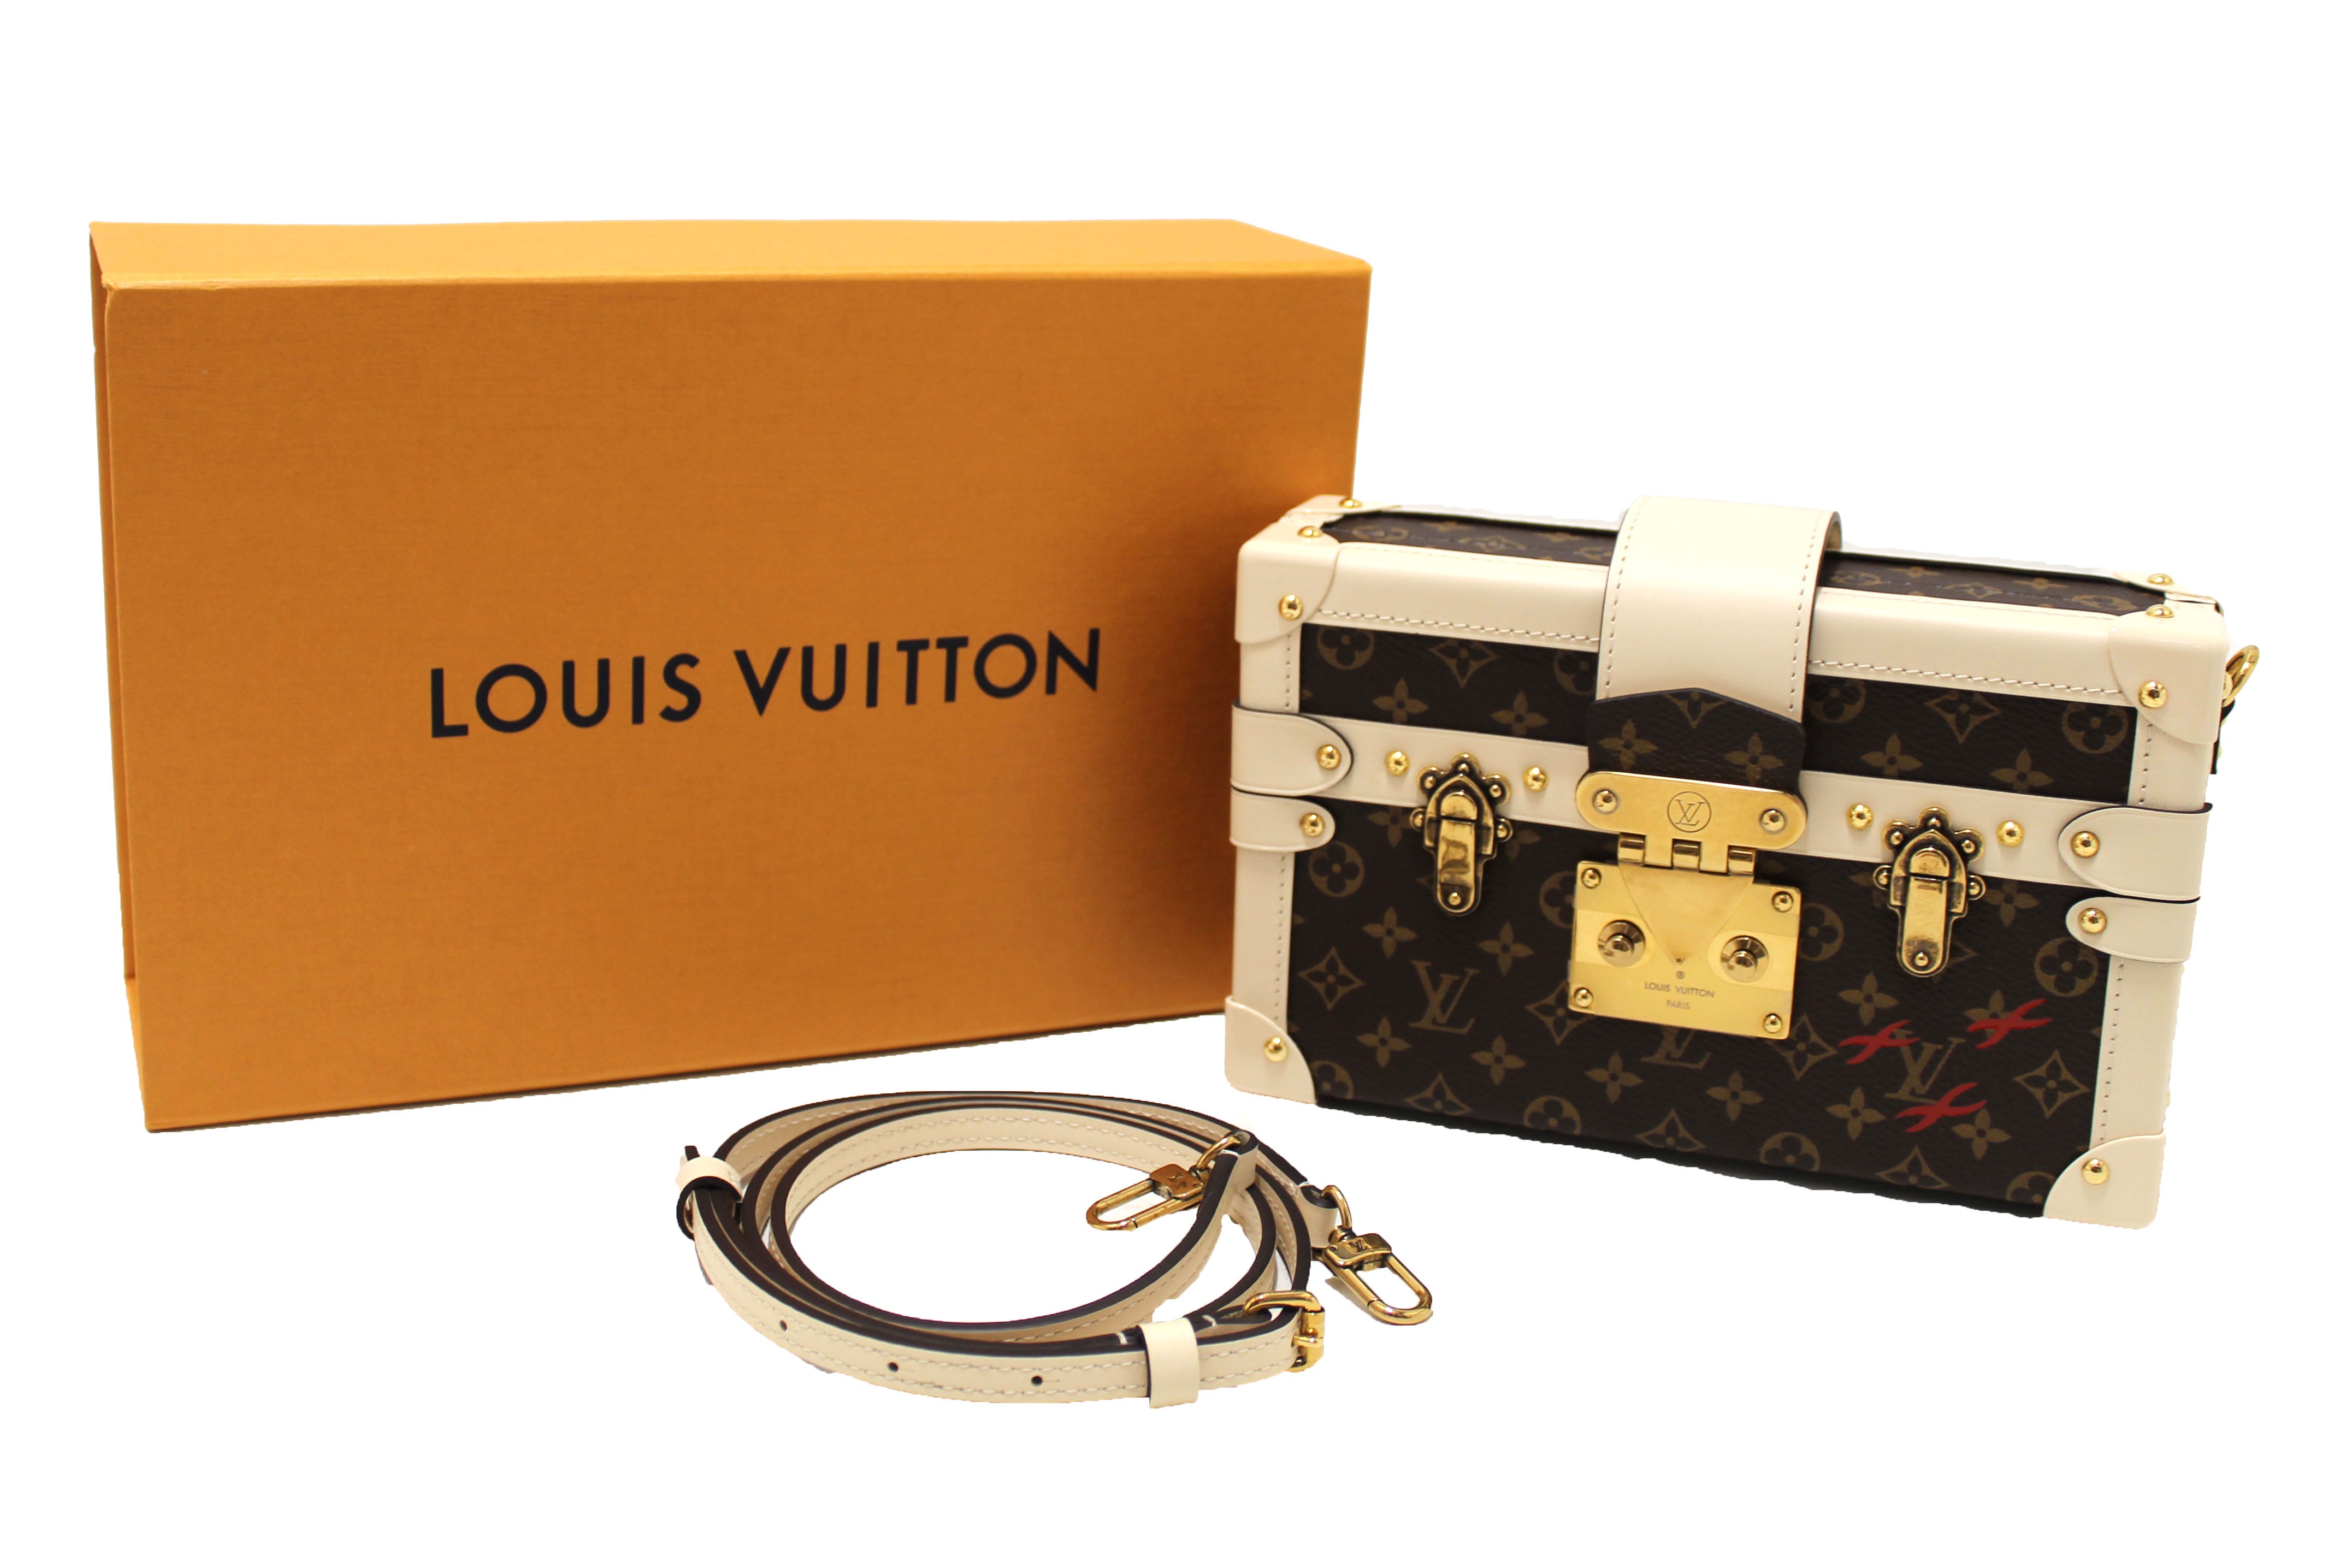 Review: Louis Vuitton Petite Malle 